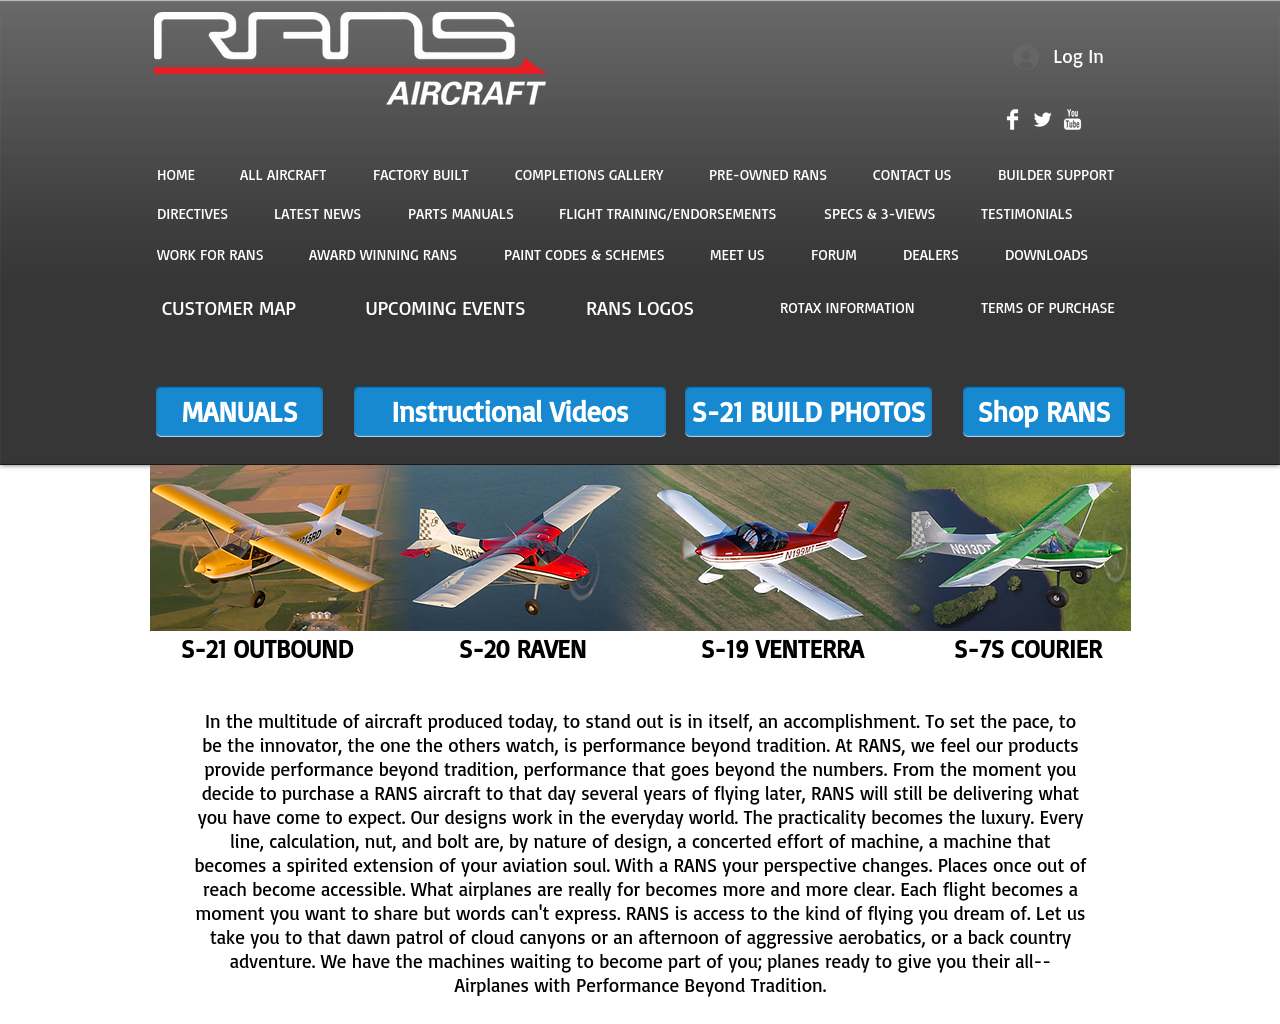 rans.com